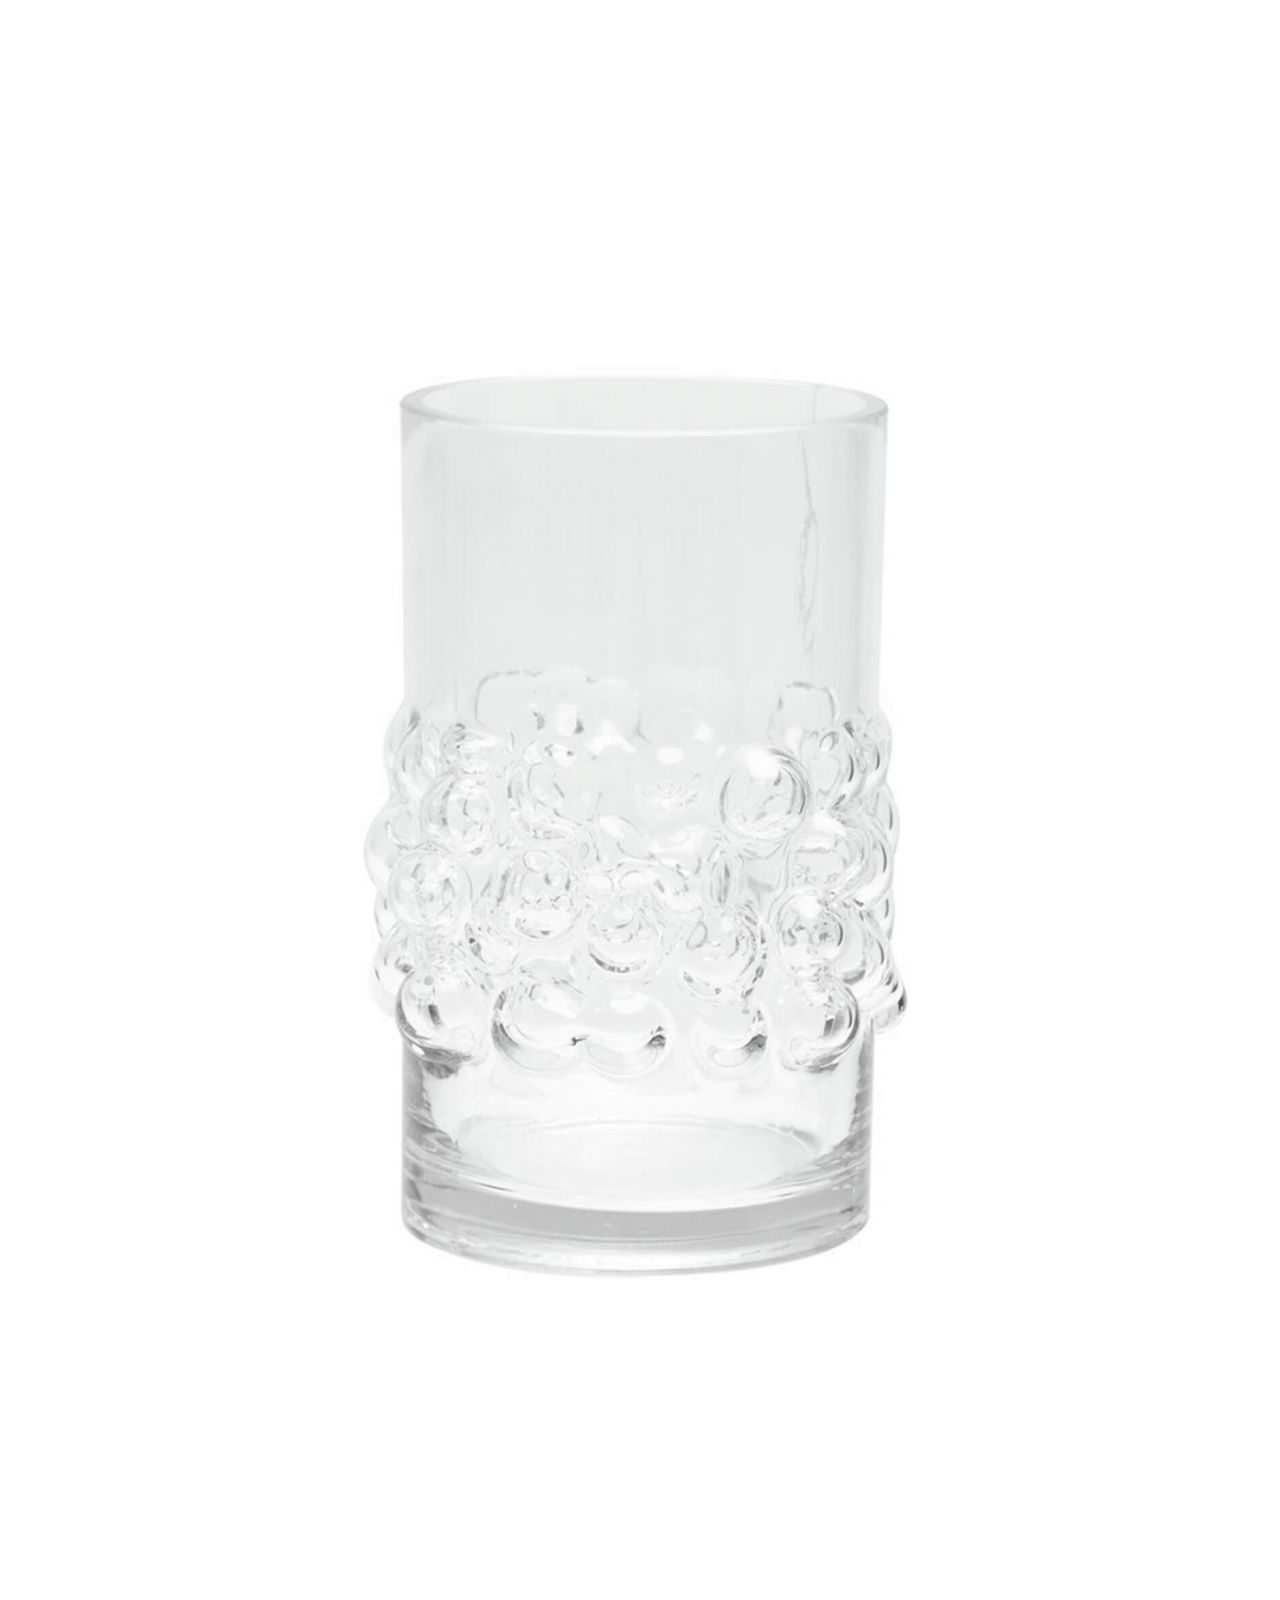 Sophie Vase Clear Glass OUTLET